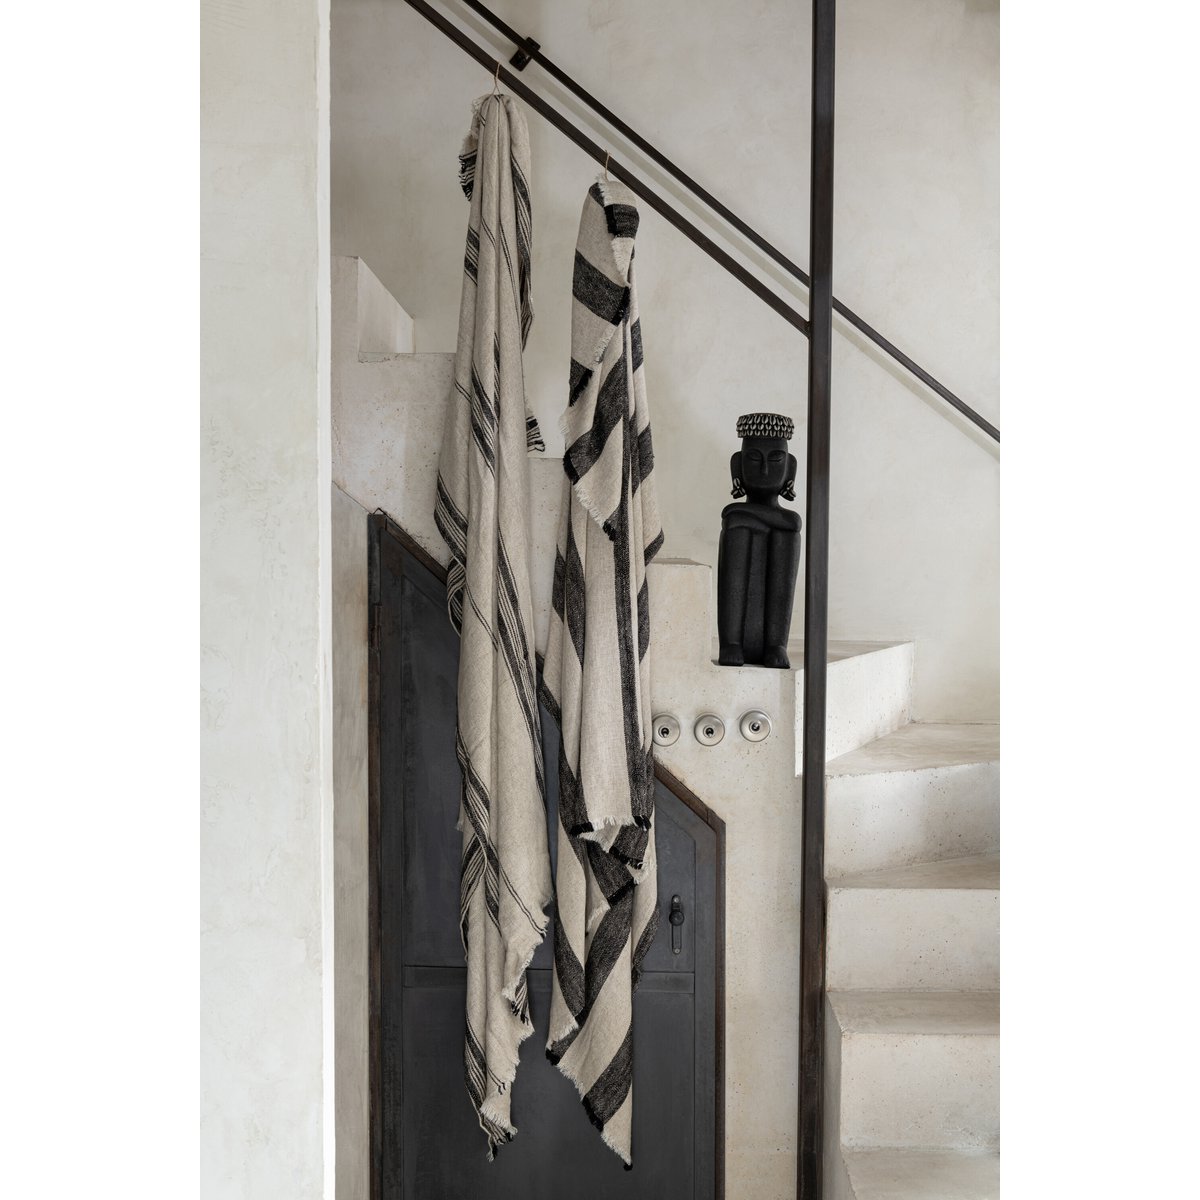 Plaid aus Leinen/Baumwolle - beige schwarz - 176 x 130 cm